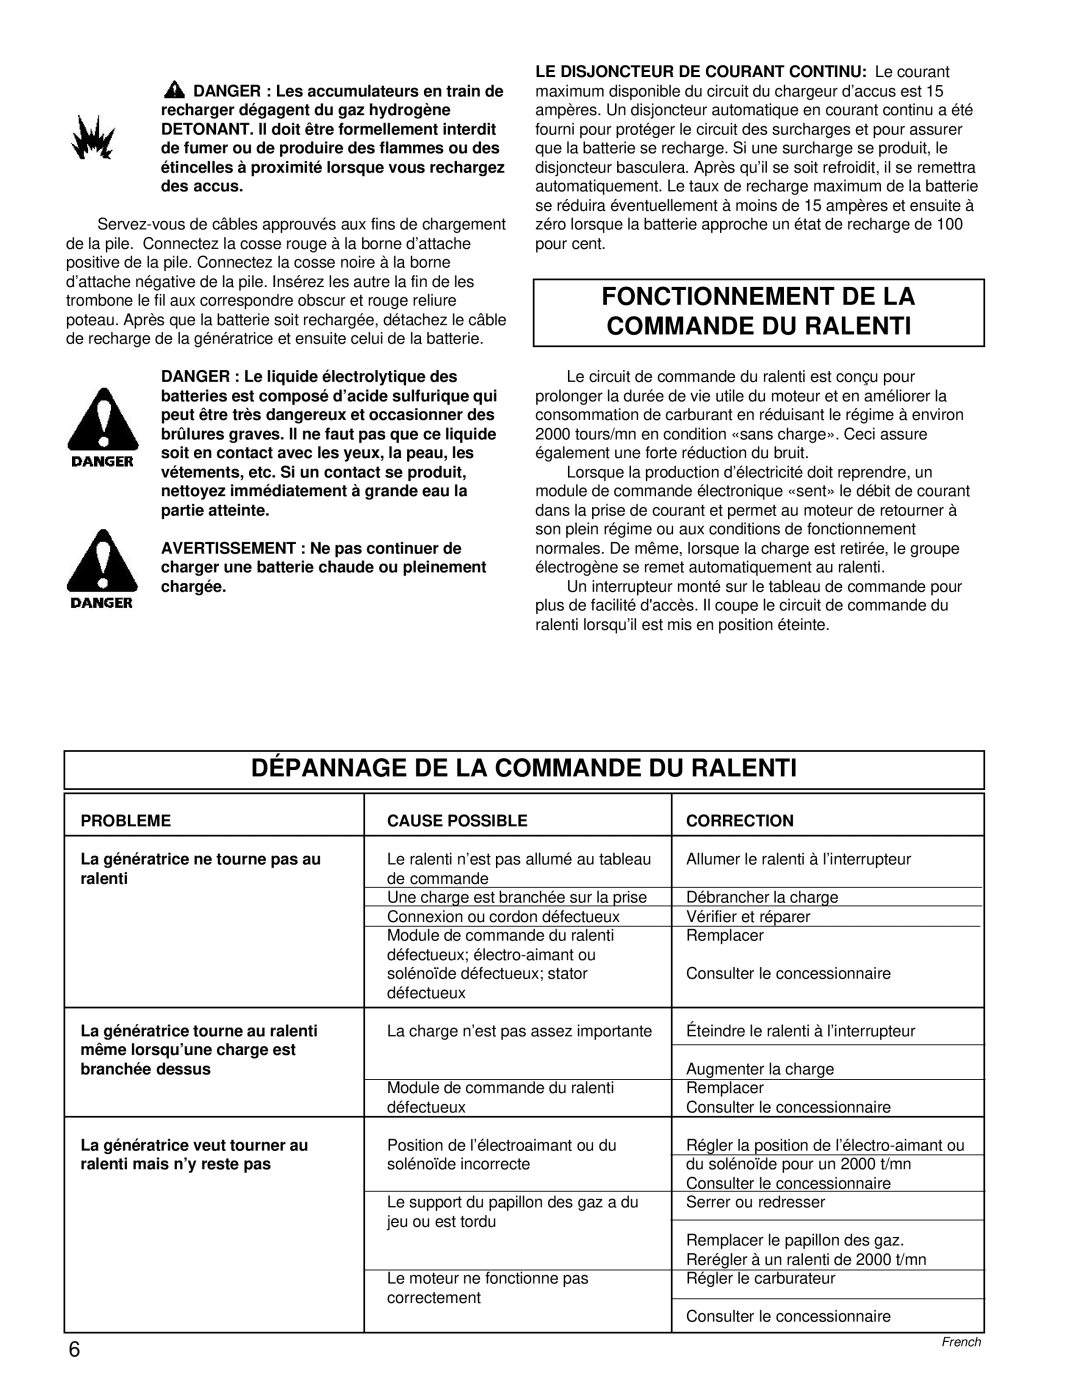 Powermate PC0496504.18 manual Fonctionnement De La Commande Du Ralenti, Dépannage De La Commande Du Ralenti 